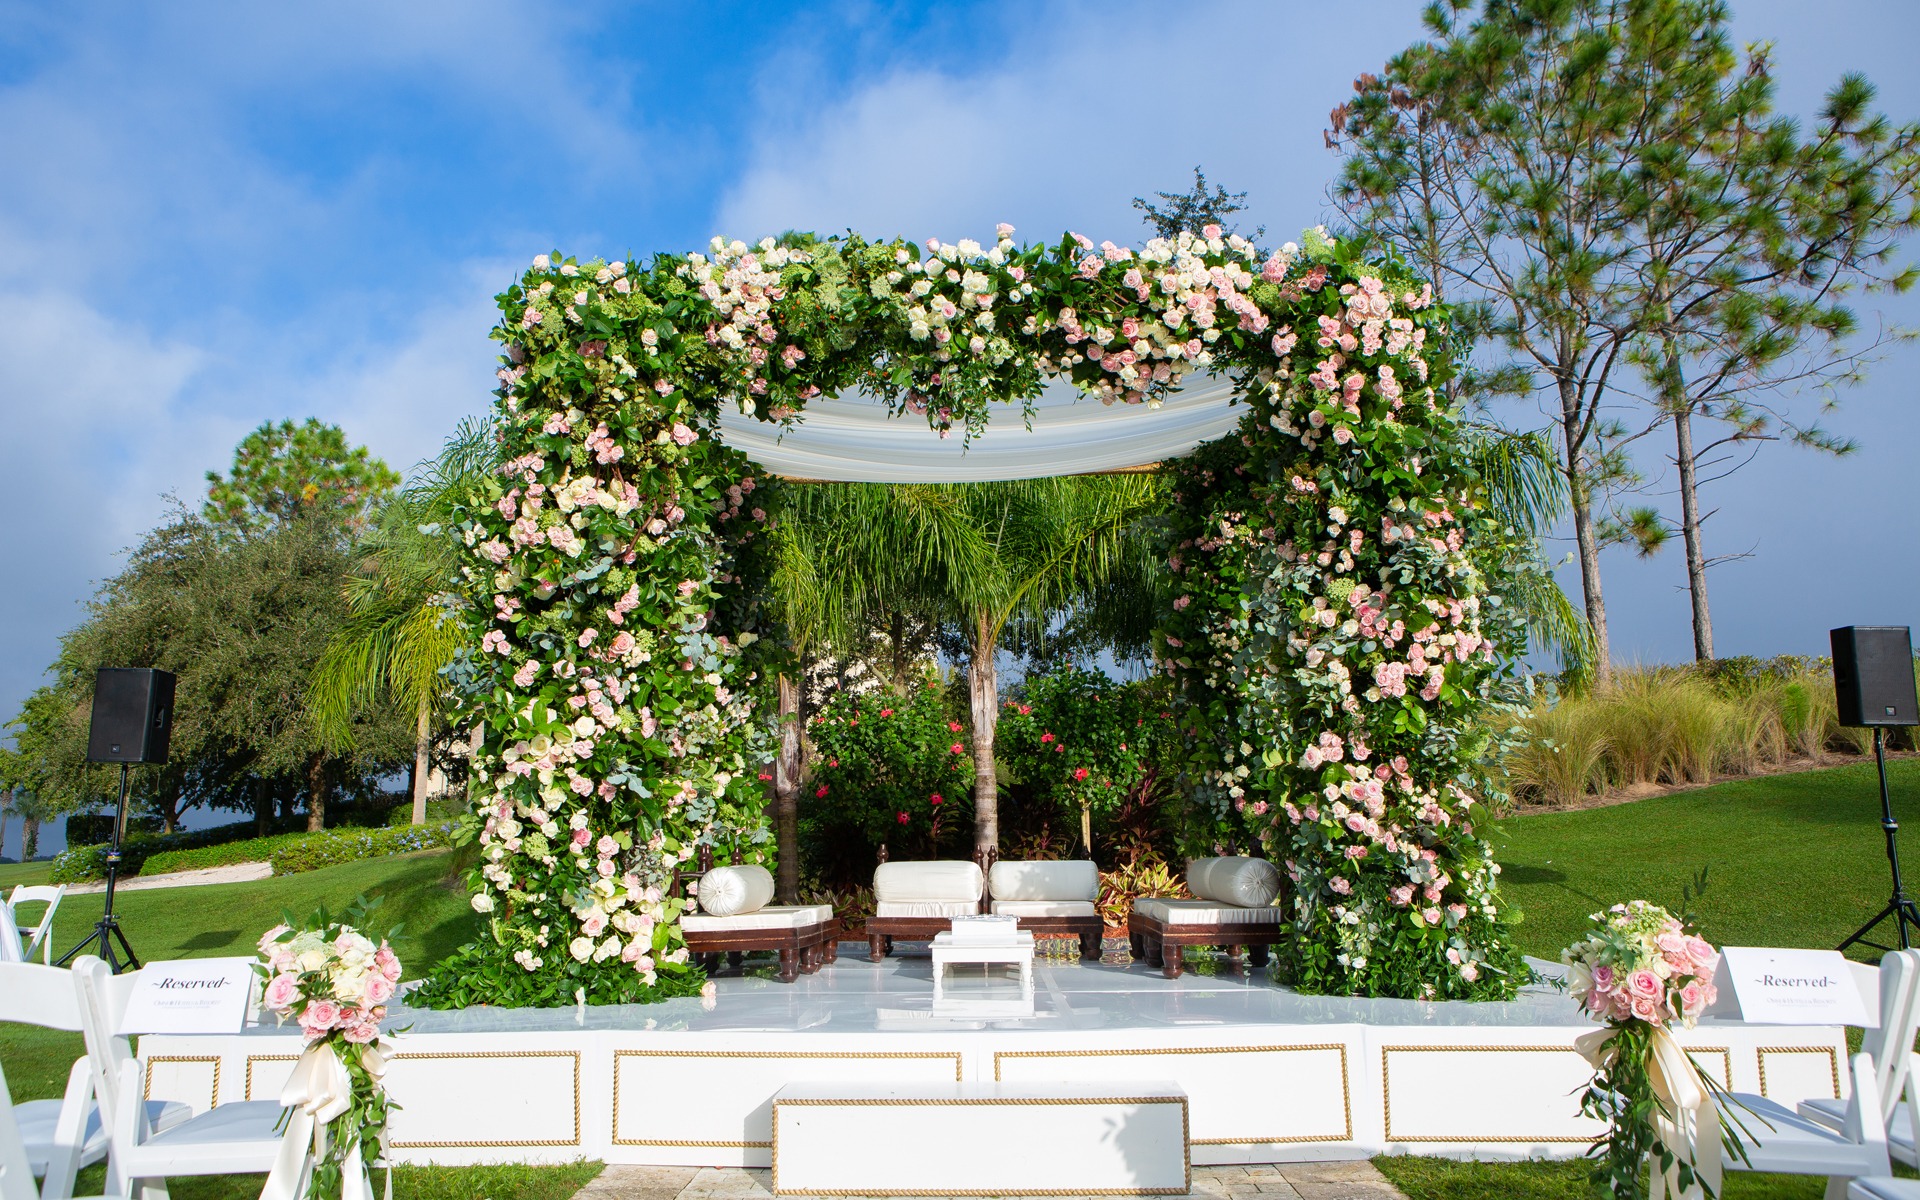 Verdant Ceremony Enchanted Garden 1 South Asian Indian Wedding Design Decor Suhaag Garden Florida